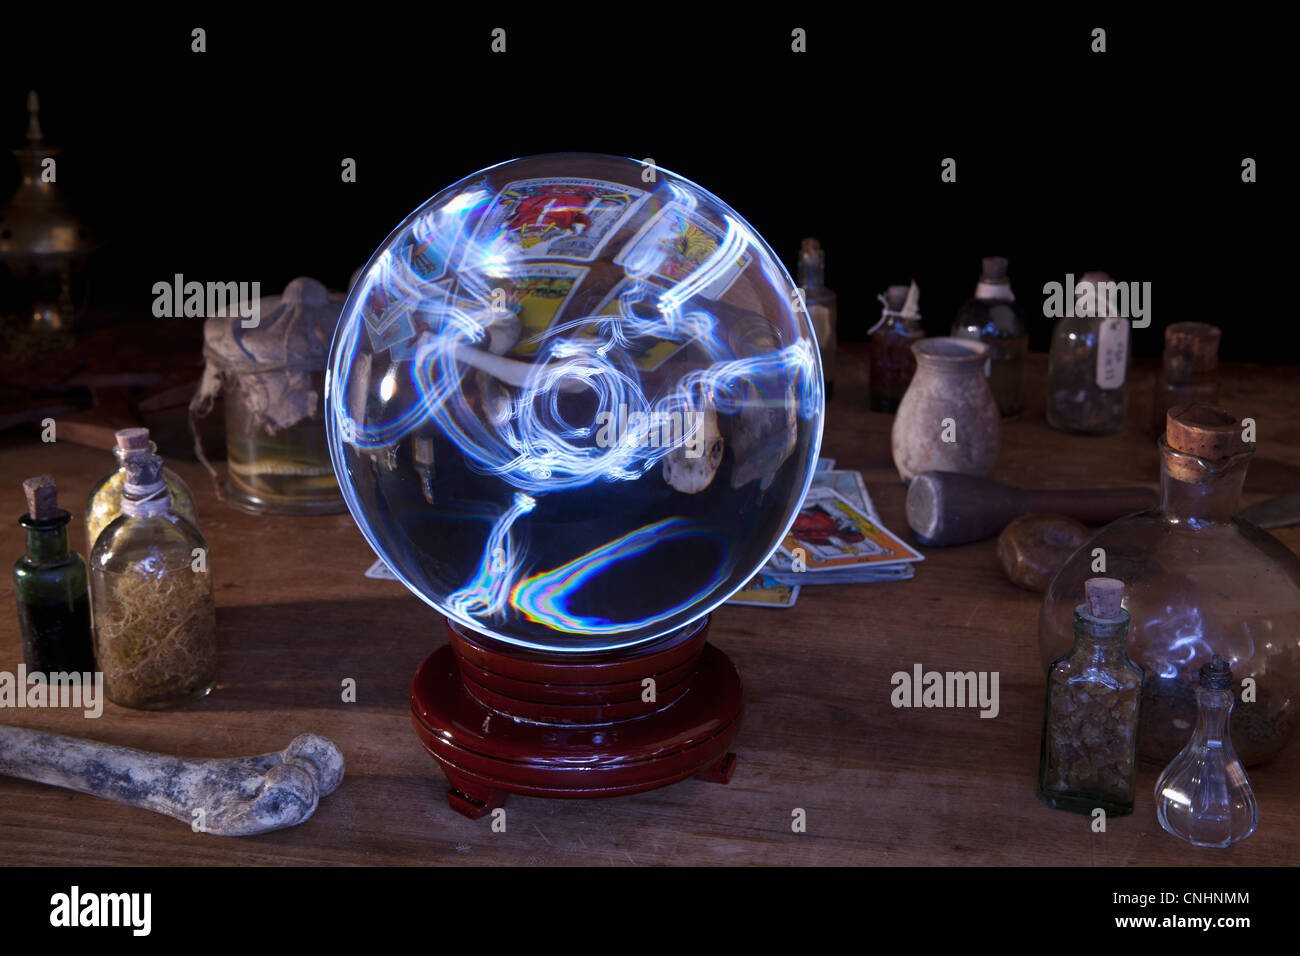 Une boule de cristal au milieu d'bouteilles et cartes de tarot Photo Stock  - Alamy